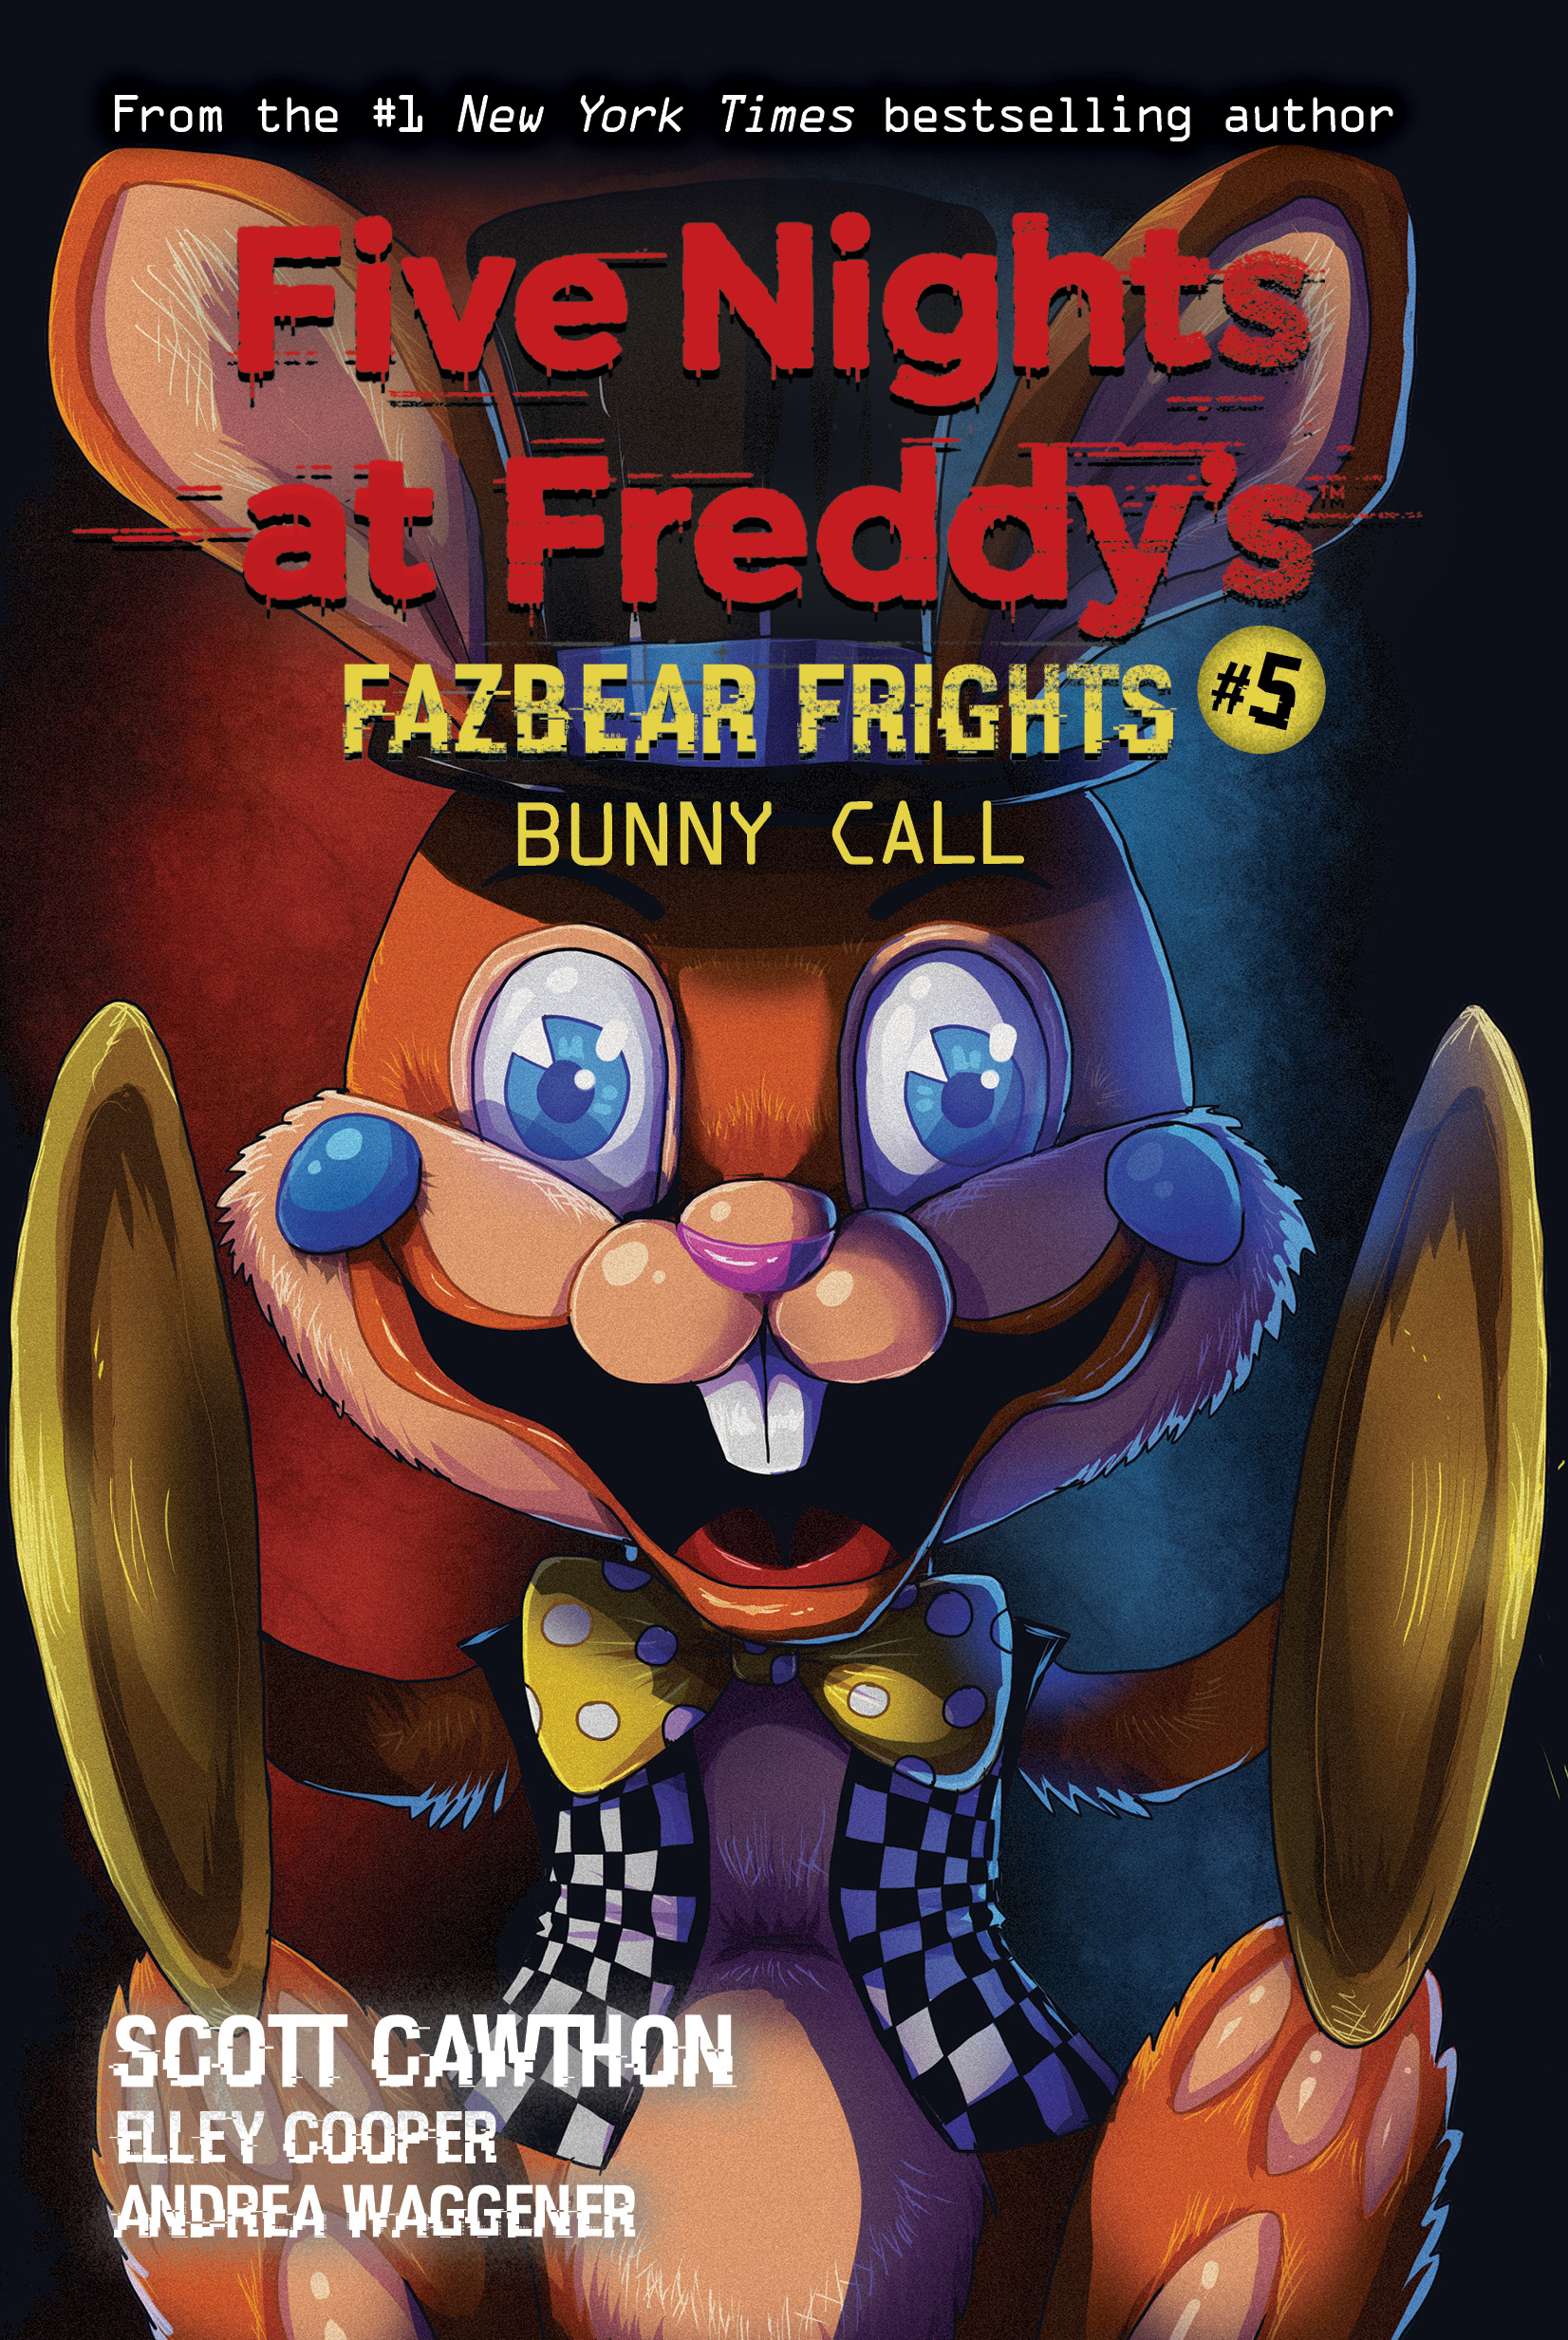 FIVE NIGHTS AT FREDDY'S BY YOUTOOZ-FREDDY FAZBEAR #2 VINYL FIGURE-FNAF-NEW